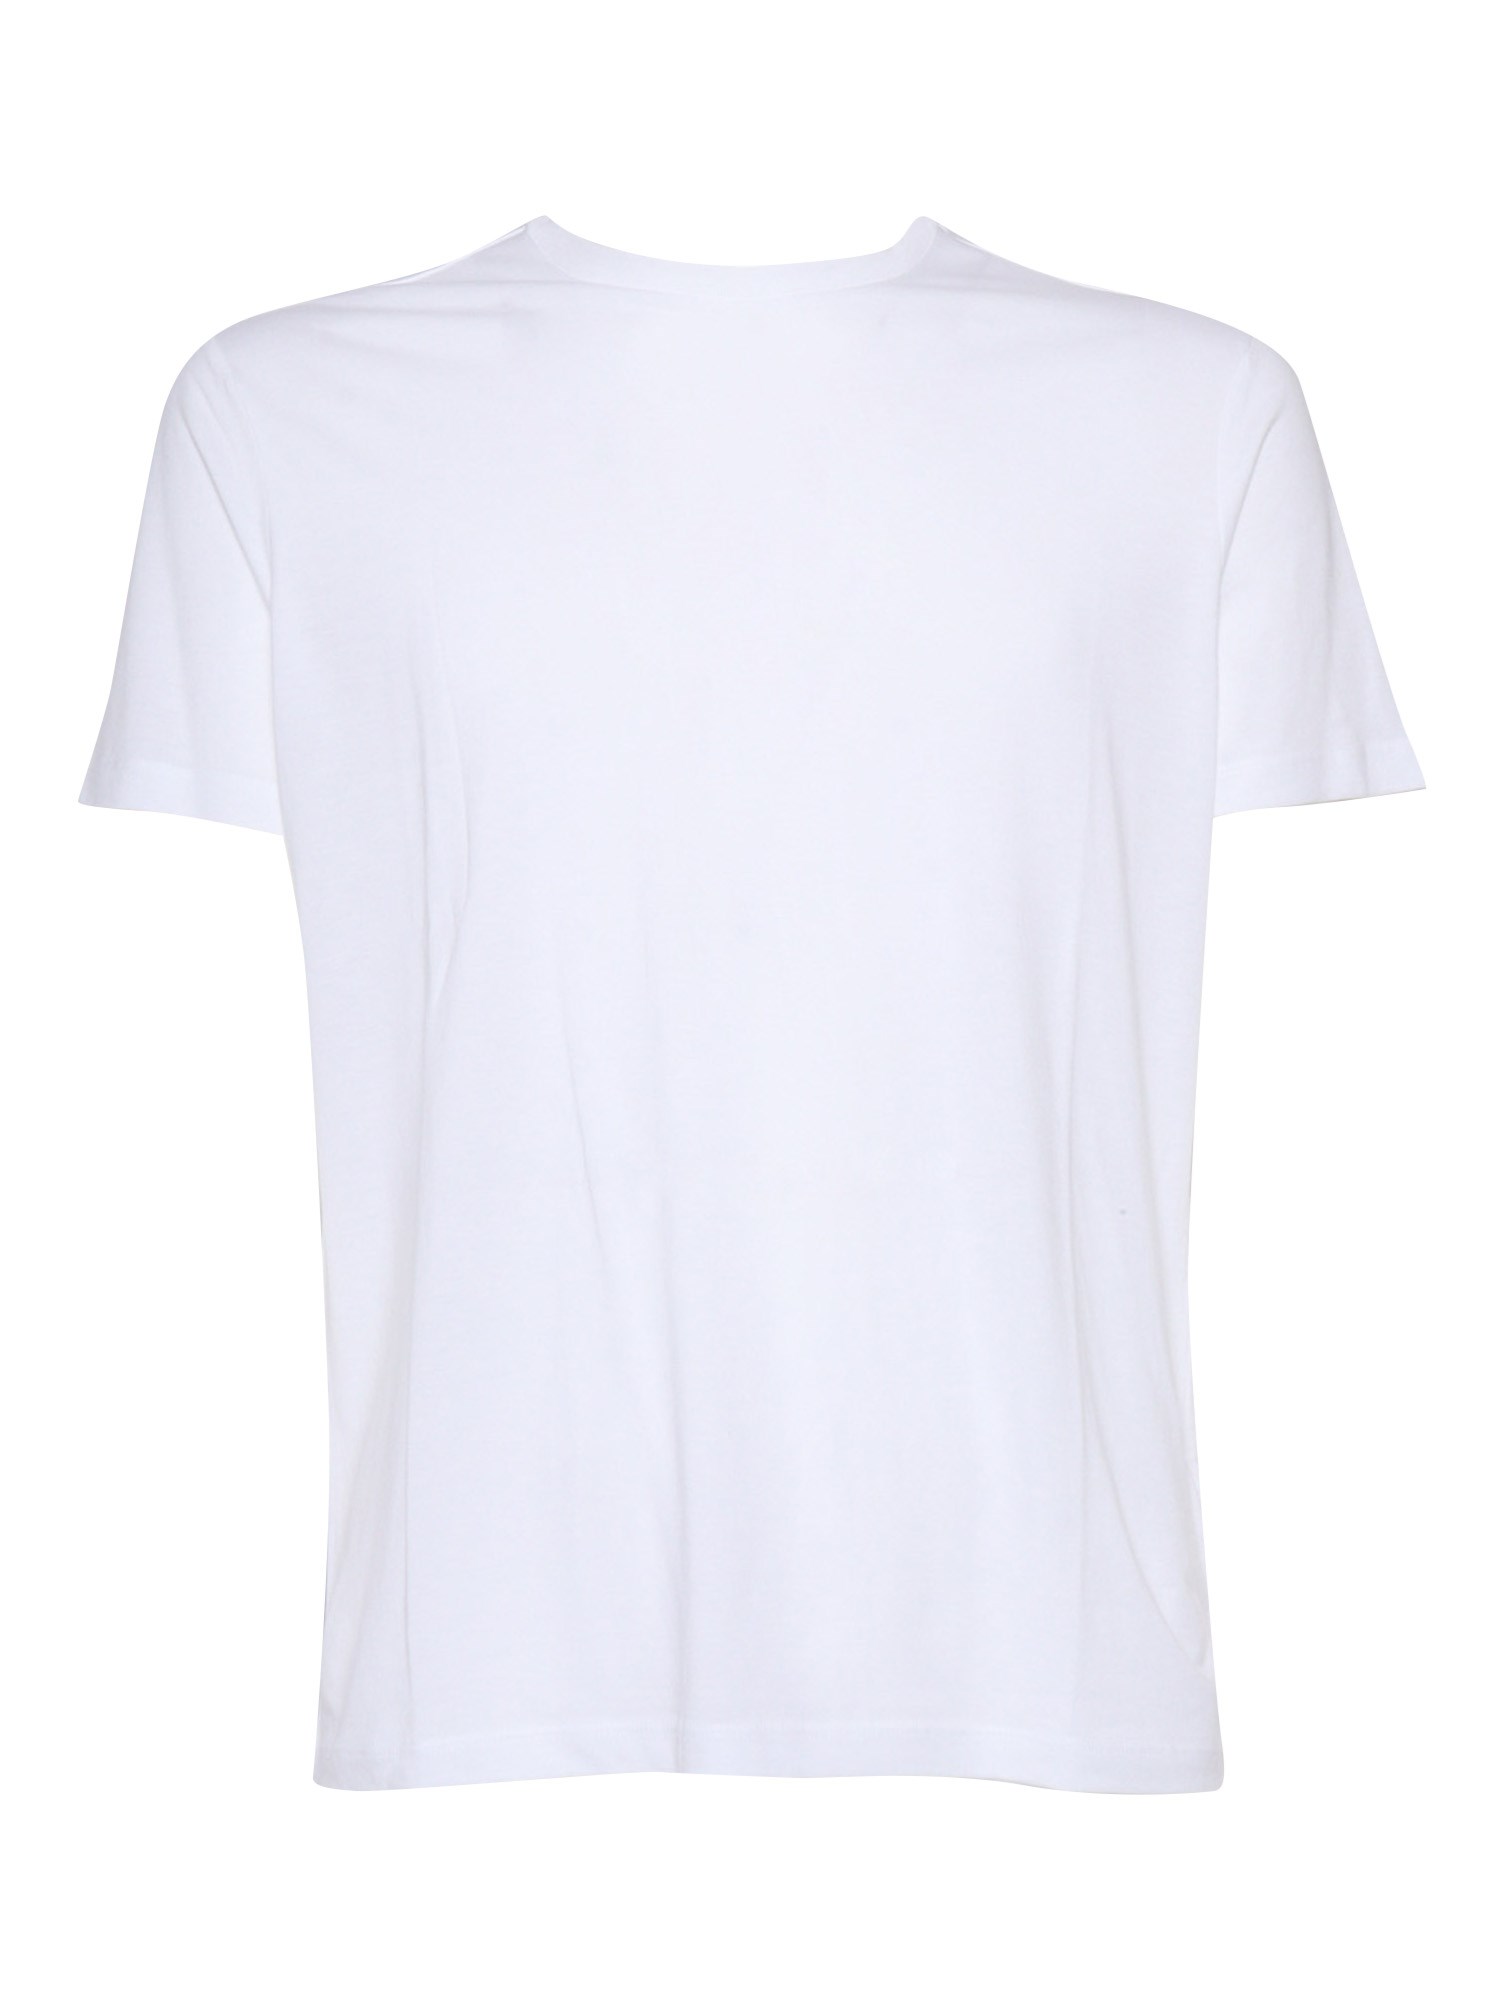 Filatures Du Lion White T-shirt